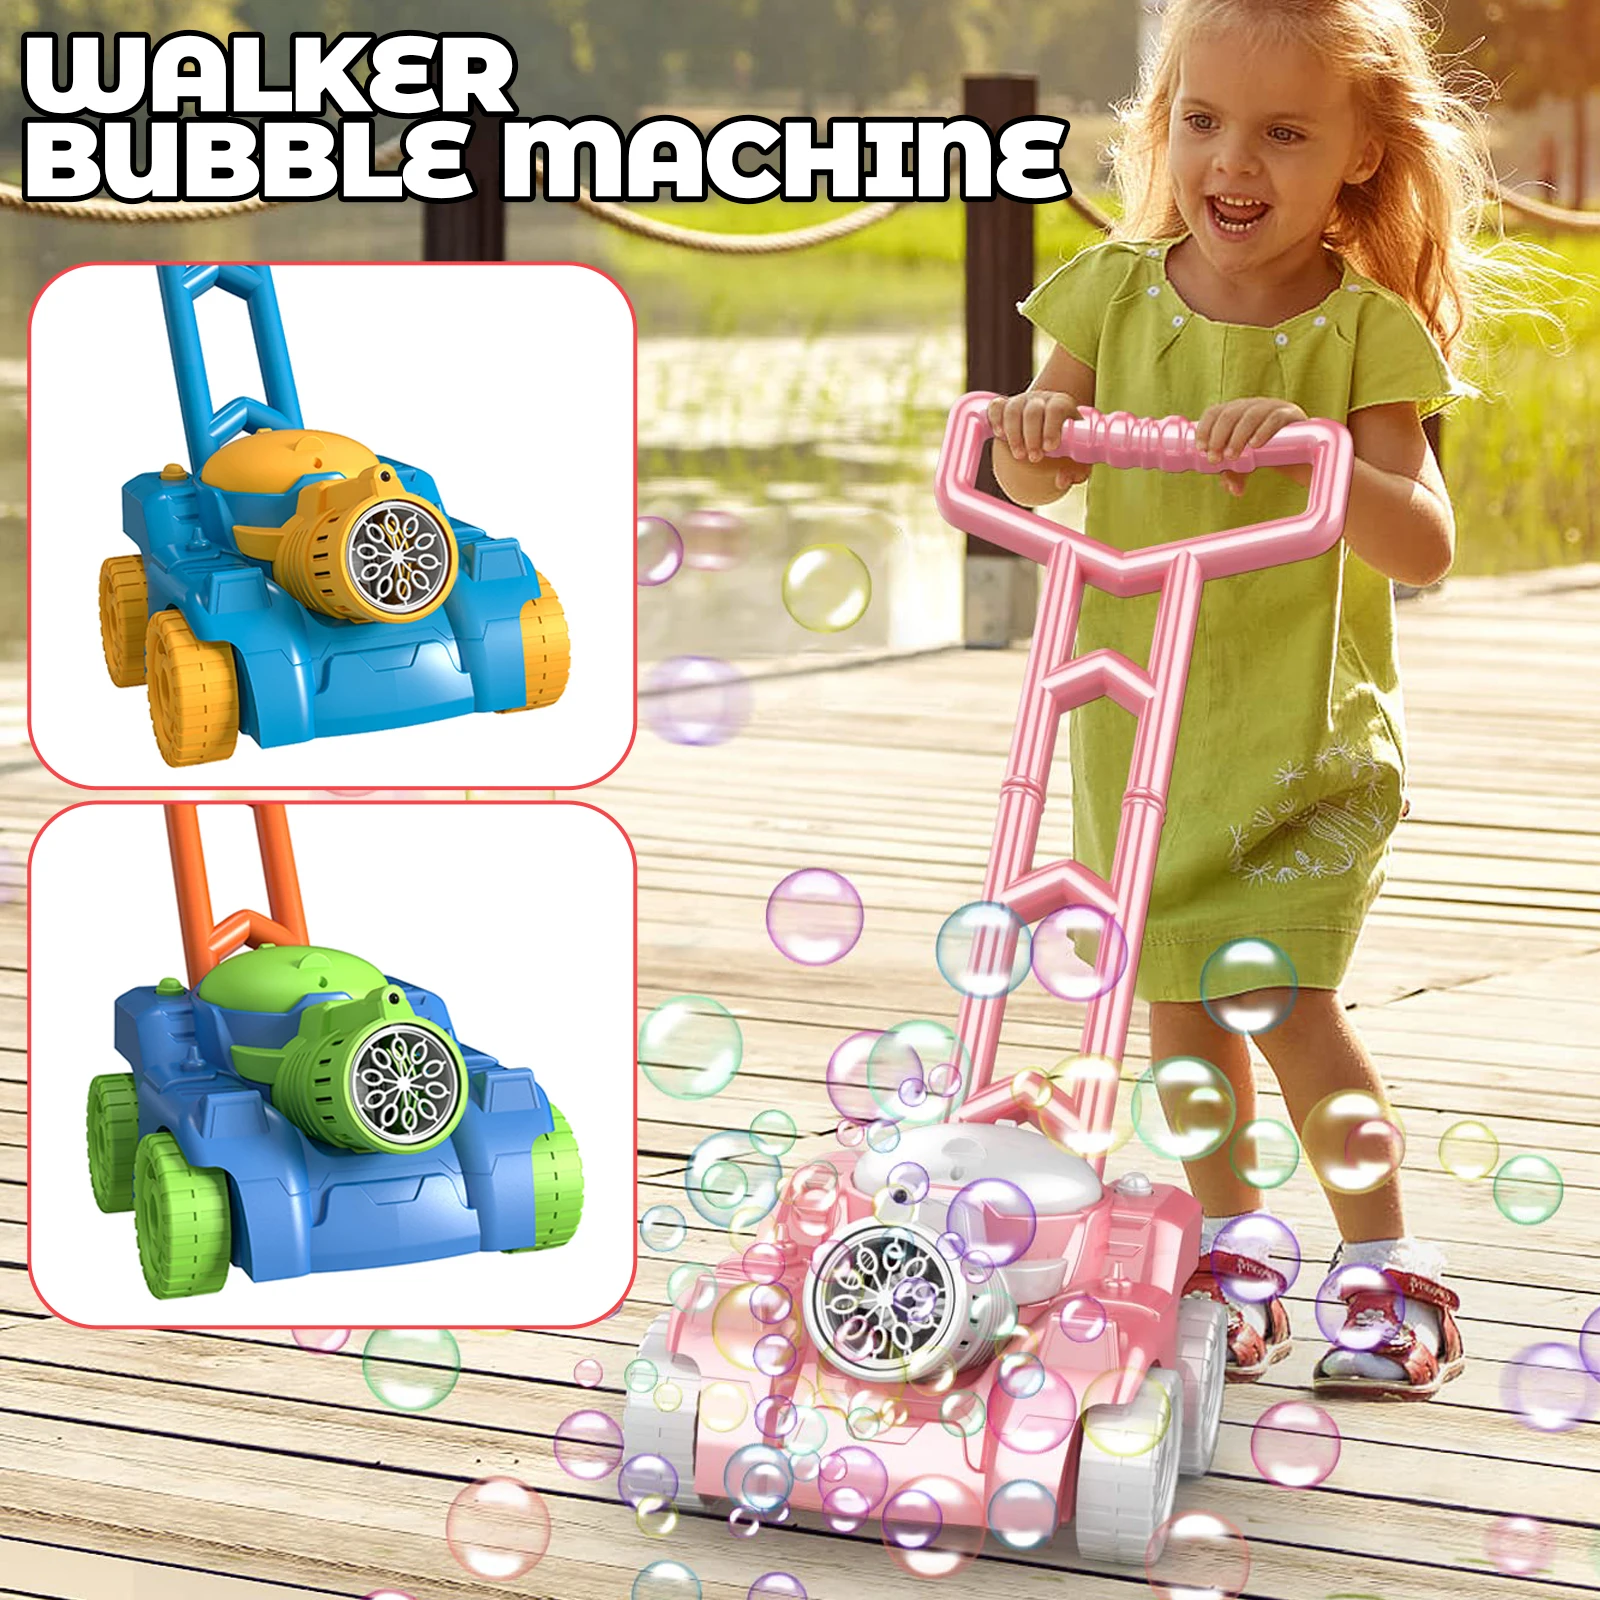 Автоматическая машина для мыльных пузырей, коляска, ходунки, игрушки для малышей, электрический генератор мыльных пузырей, летние игрушки на открытом воздухе, подарок для детей